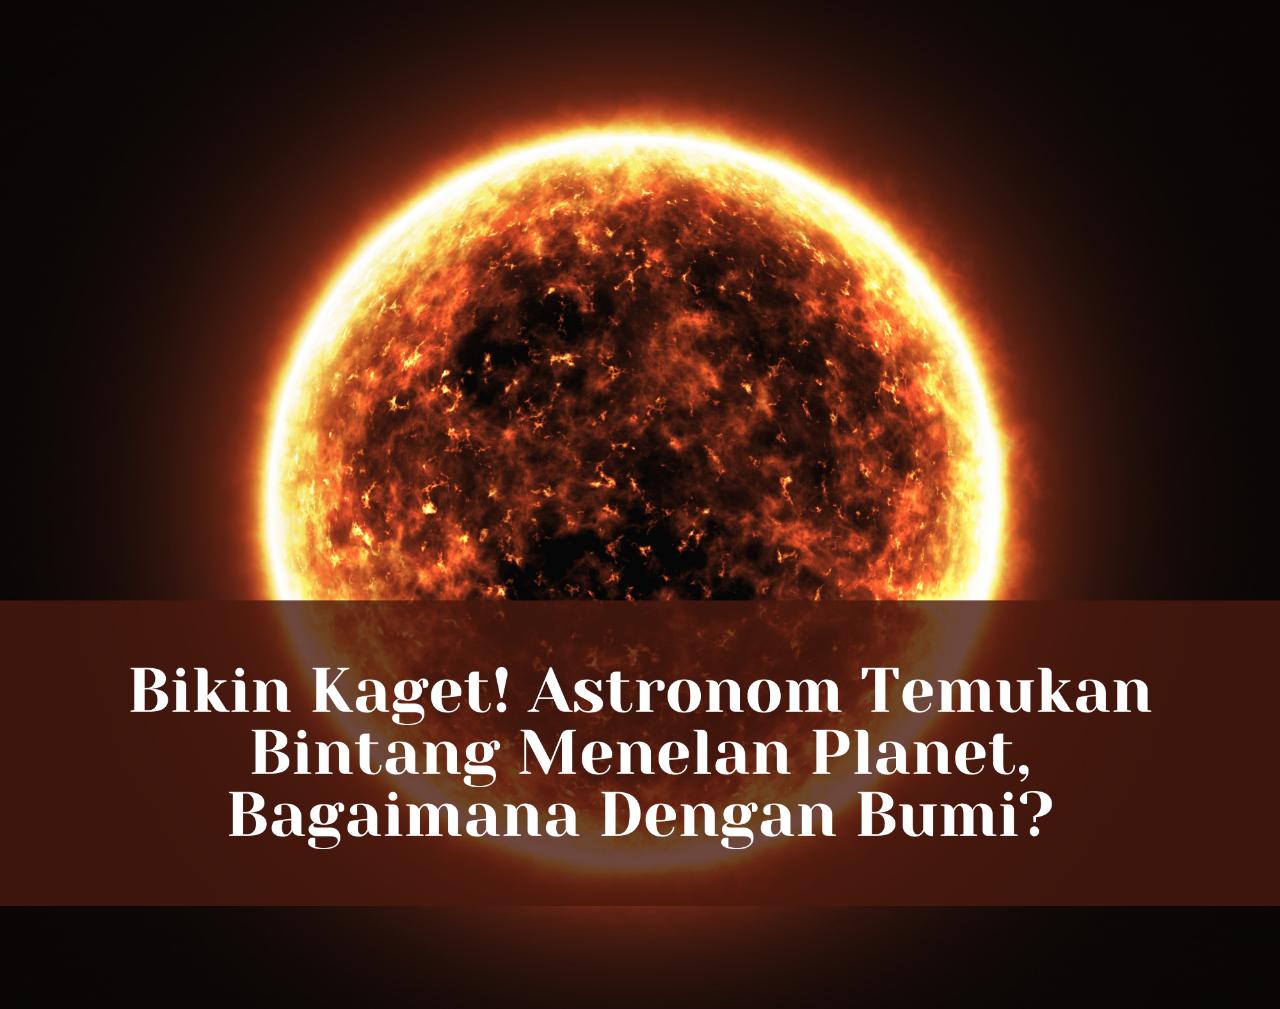 Bikin Kaget! Astronom Temukan Bintang Menelan Planet, Bagaimana Dengan Bumi?